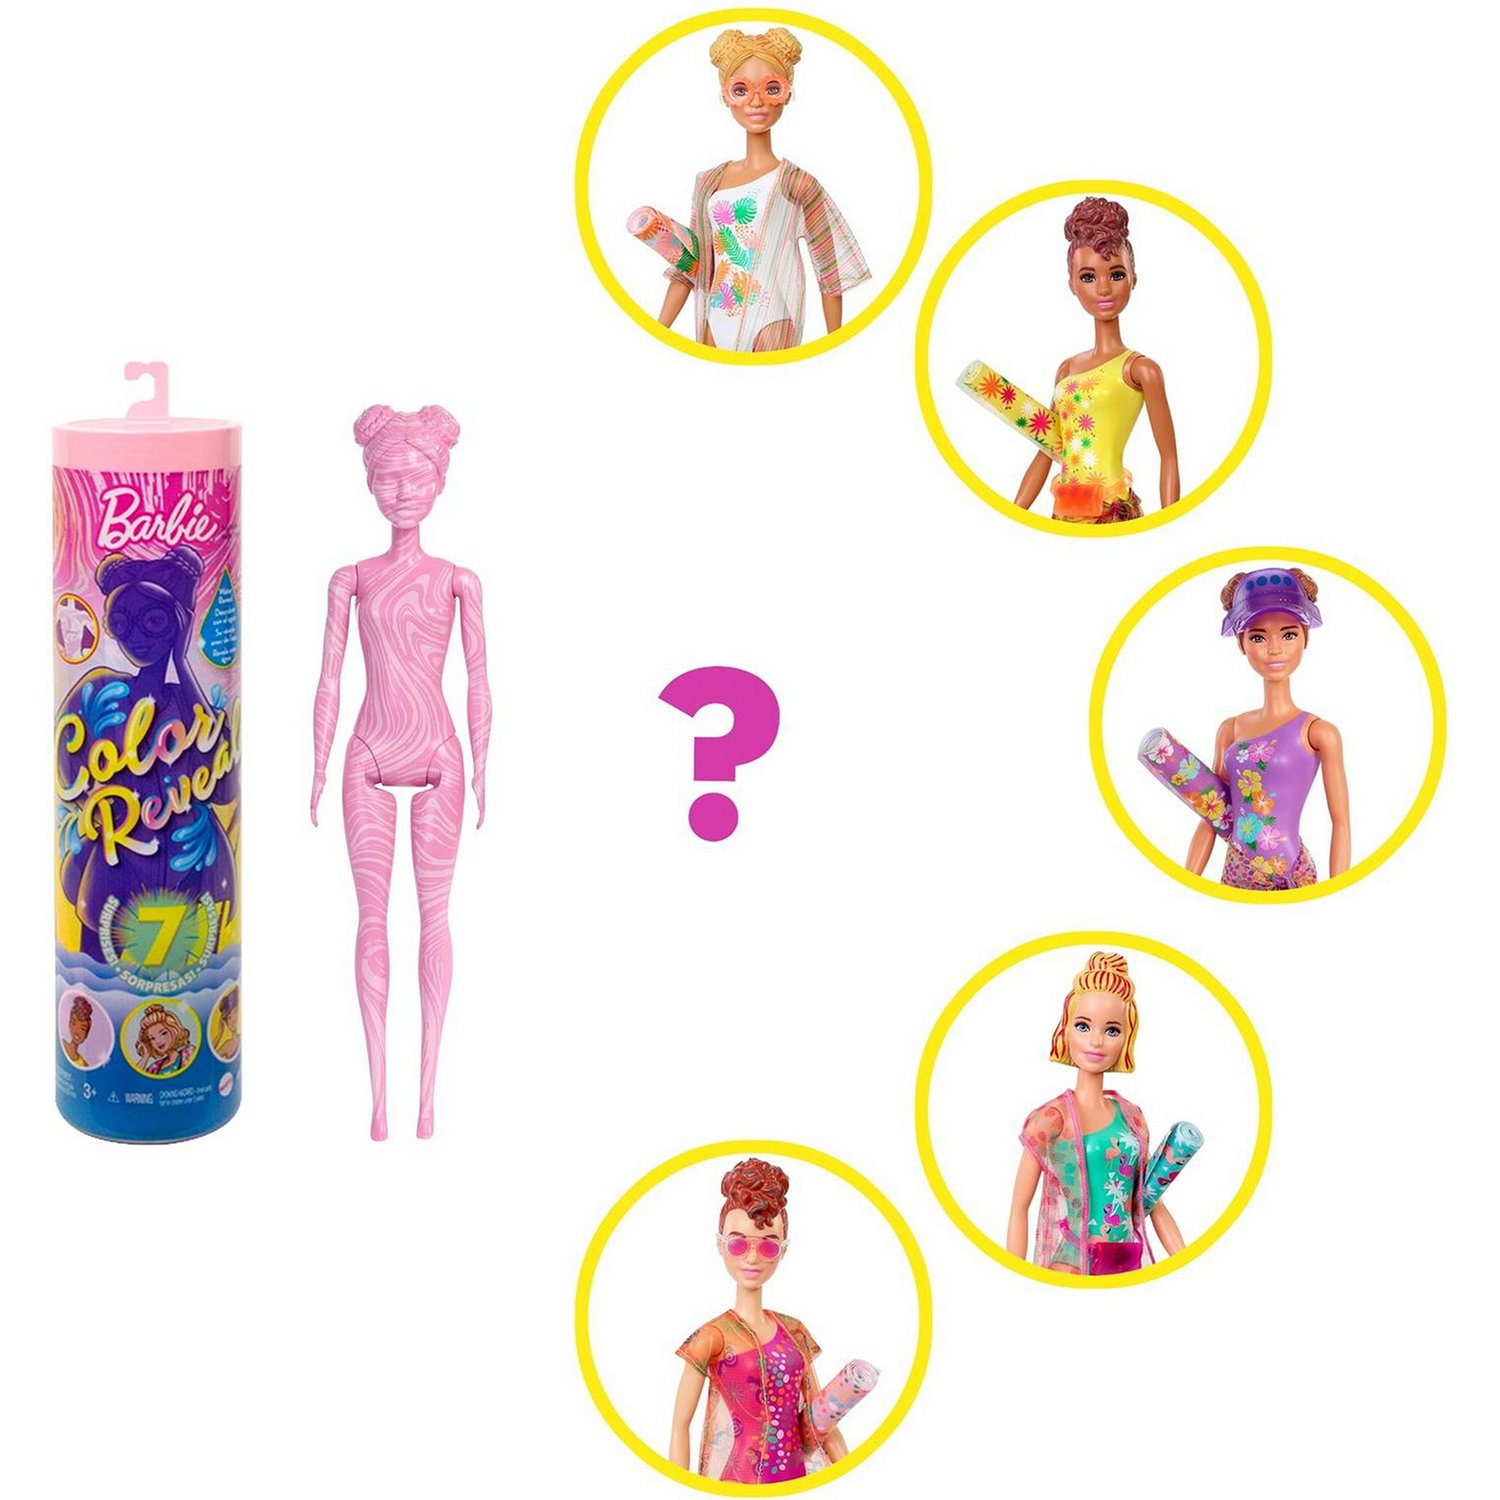 Кукла Barbie Песок и Солнце в непрозрачной упаковке (Сюрприз) GTR95